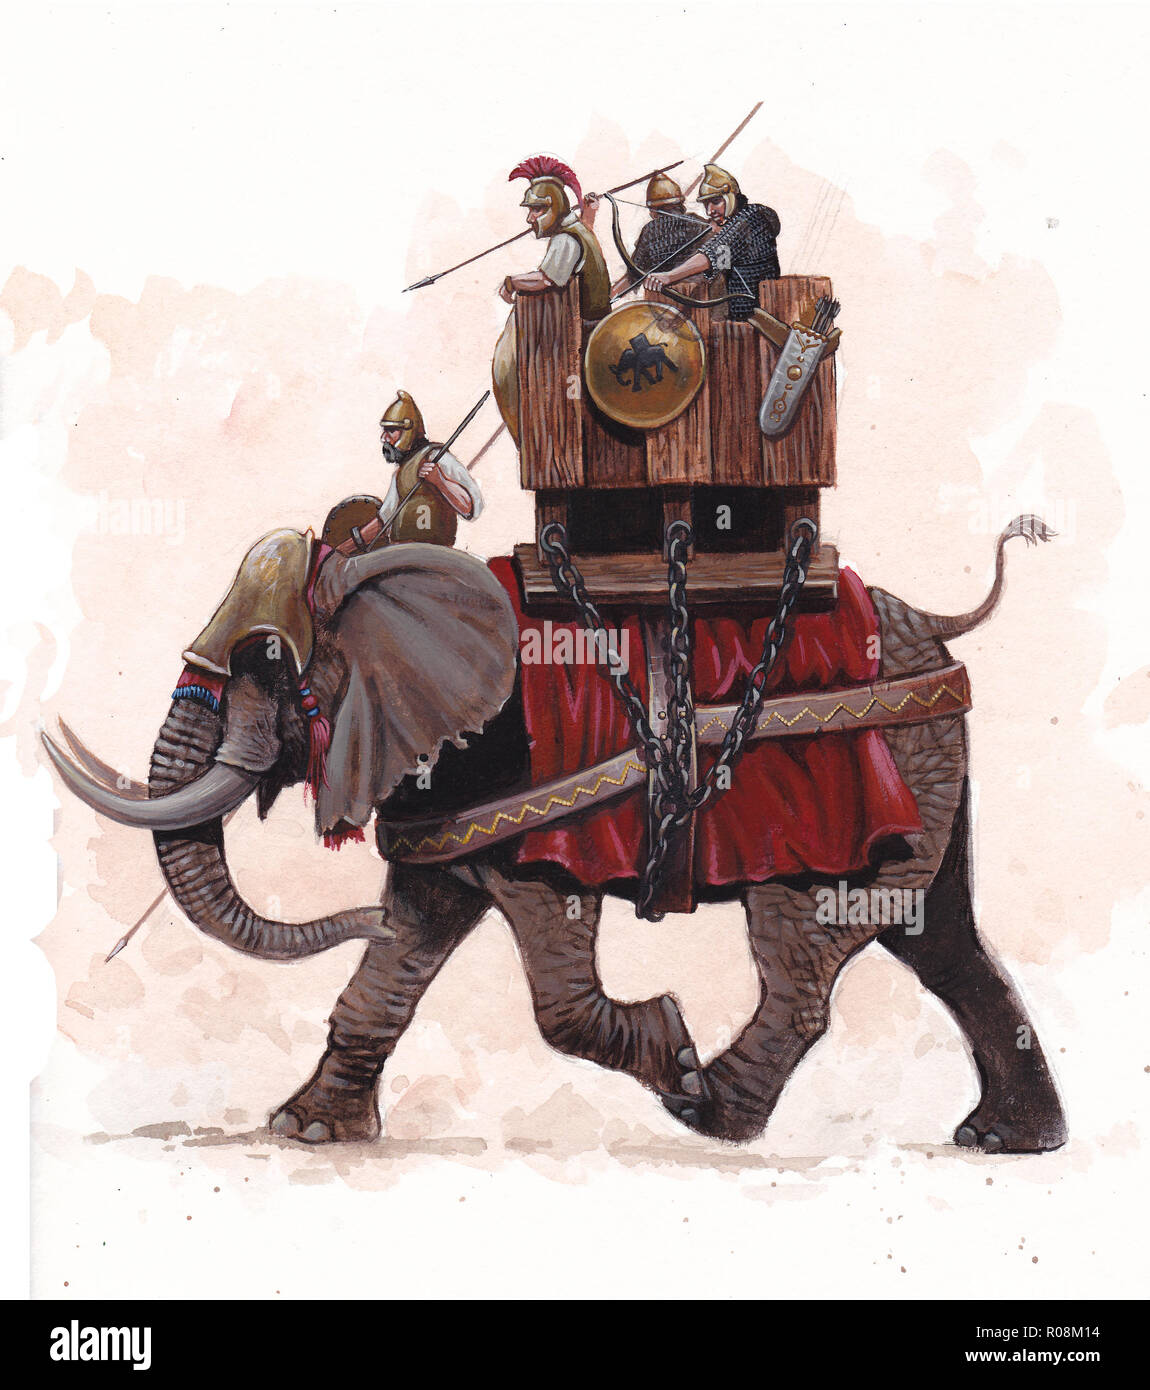 War elephant illustration, army of Carthage. Historical illustration. Stock Photo